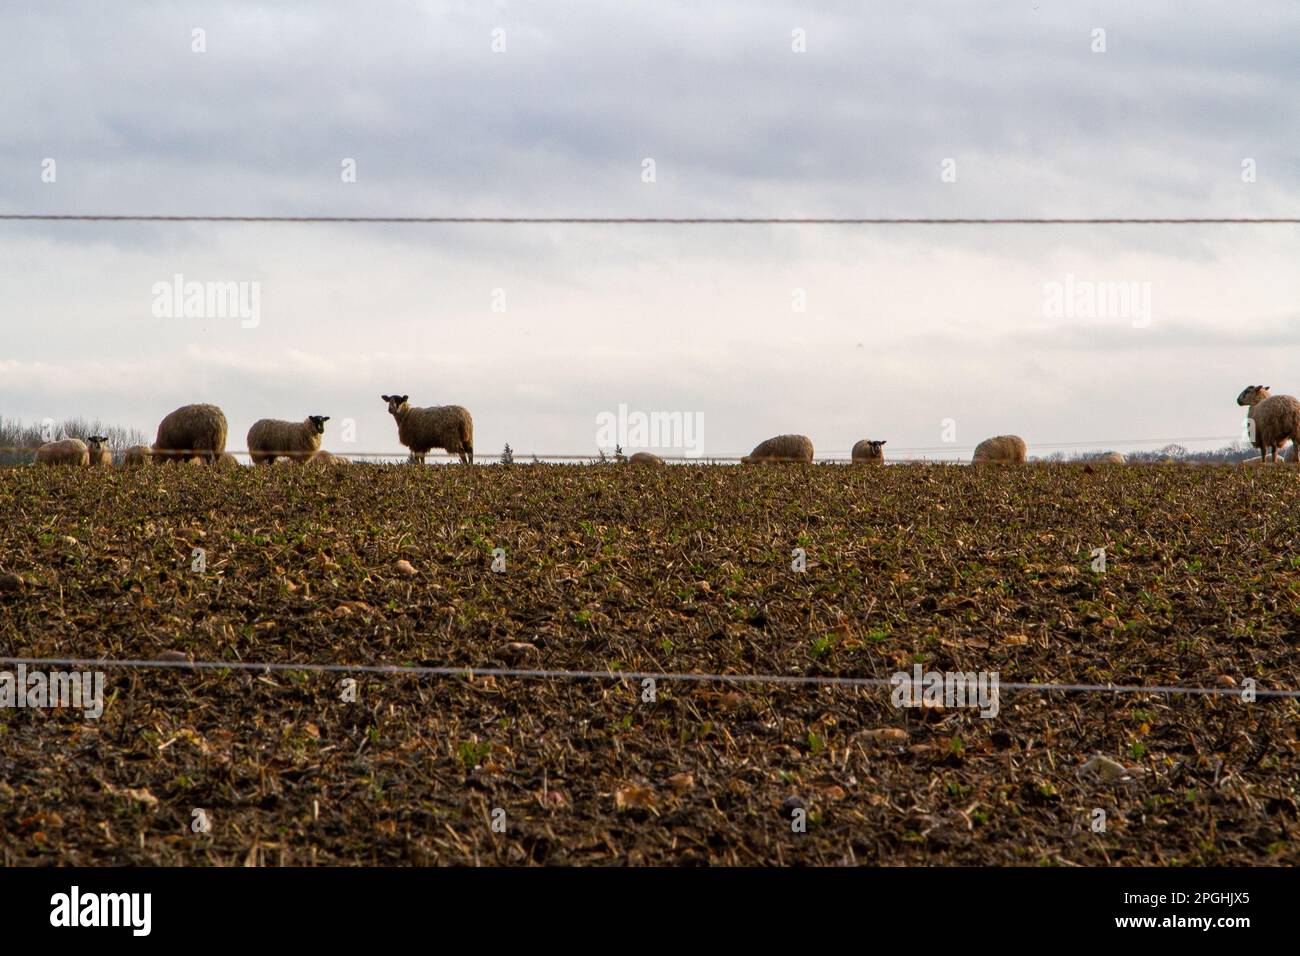 Sous un ciel maussade, les moutons dans un champ de Suffolk mangent une récolte de racines Banque D'Images